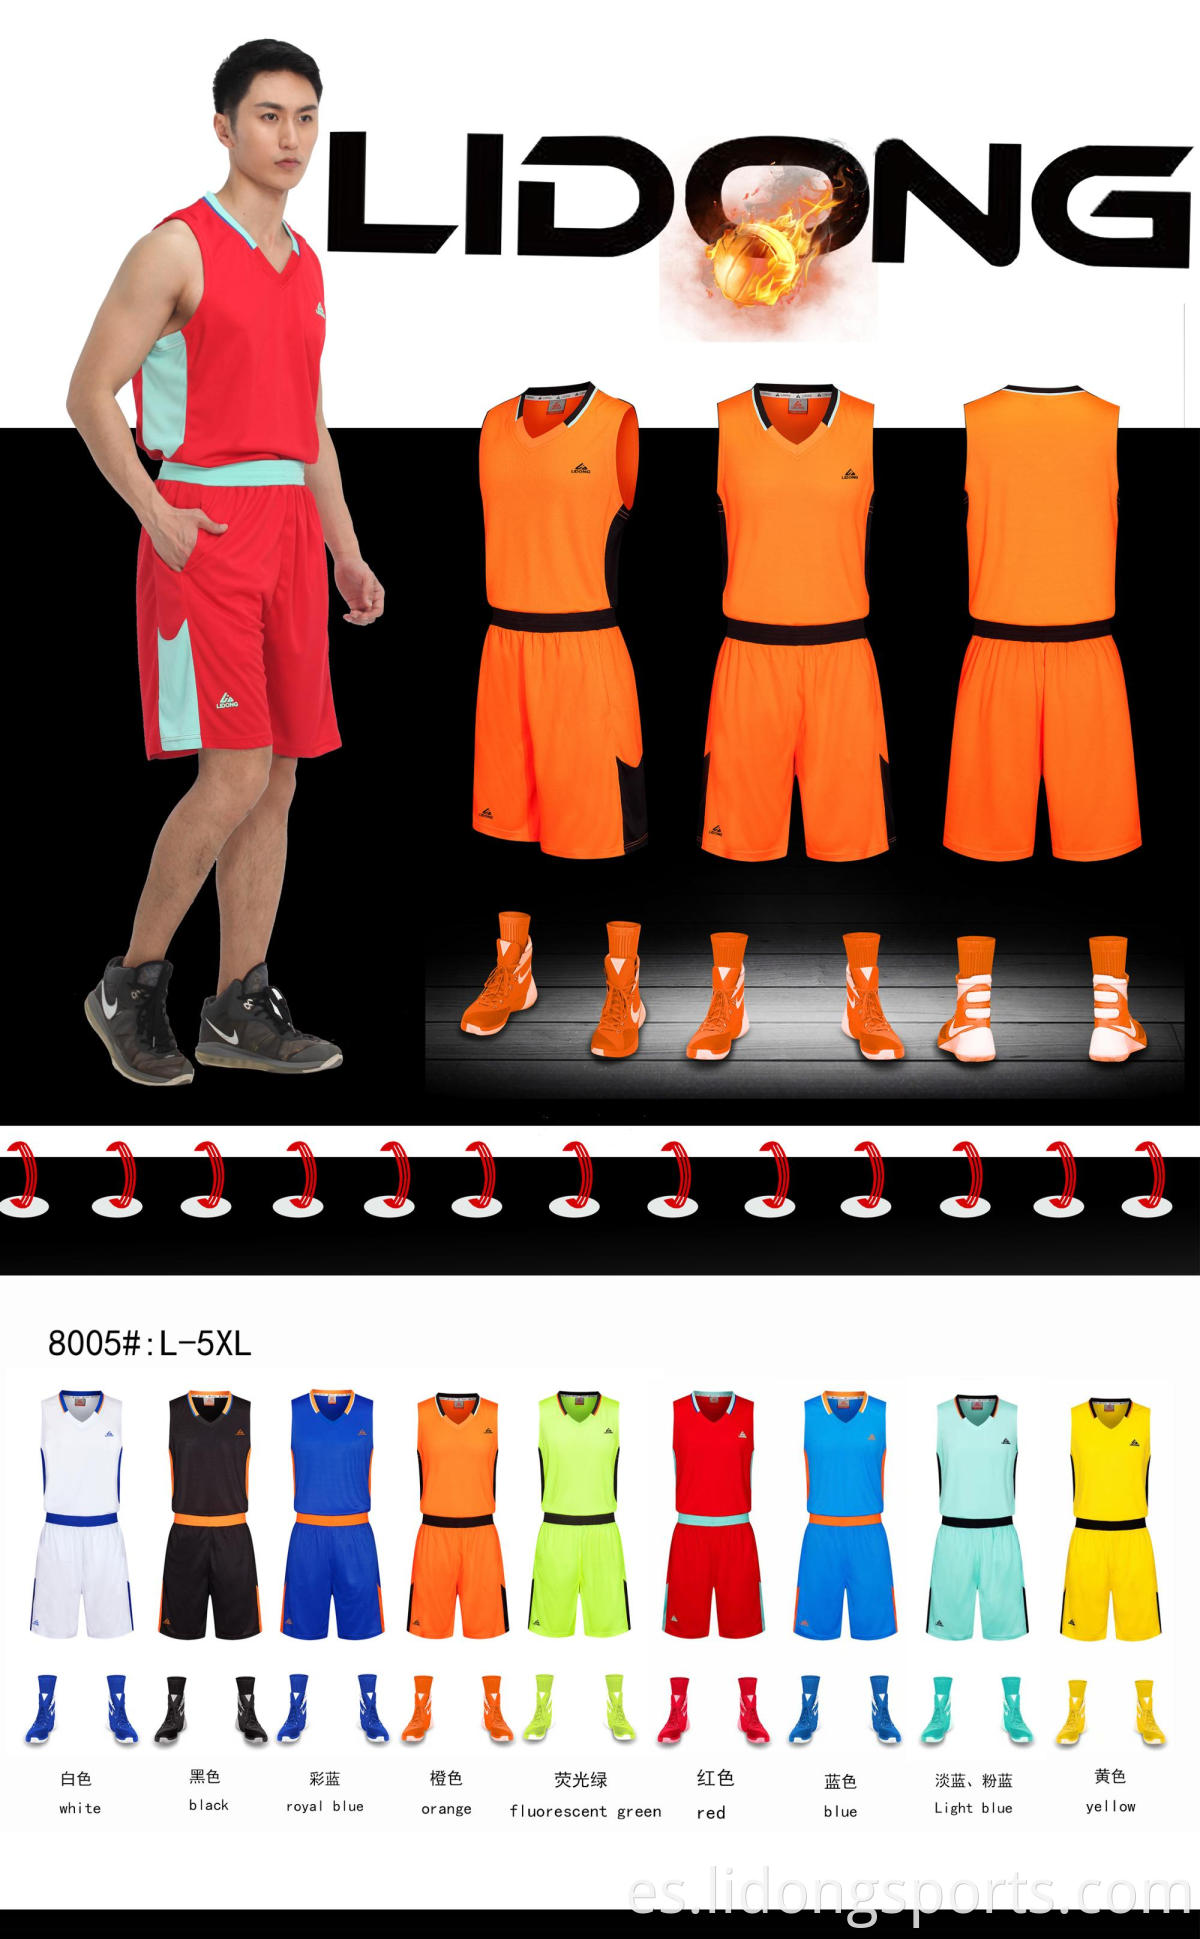 Diseño de uniforme de jersey de baloncesto de sublimación de alta calidad